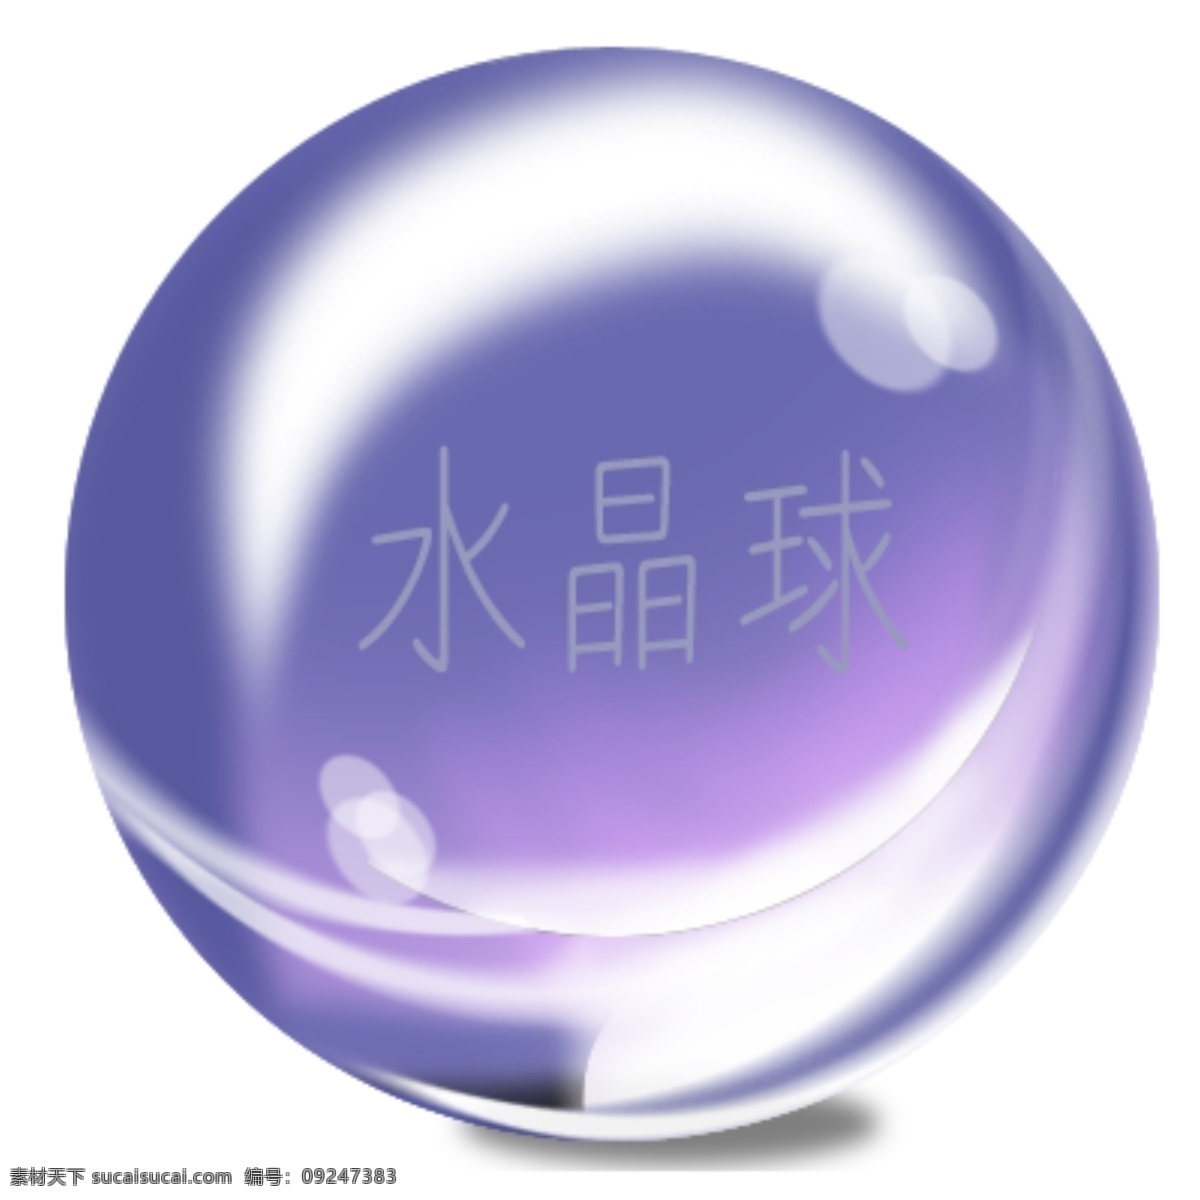 水晶球 玻璃 水晶 透明 球 白色